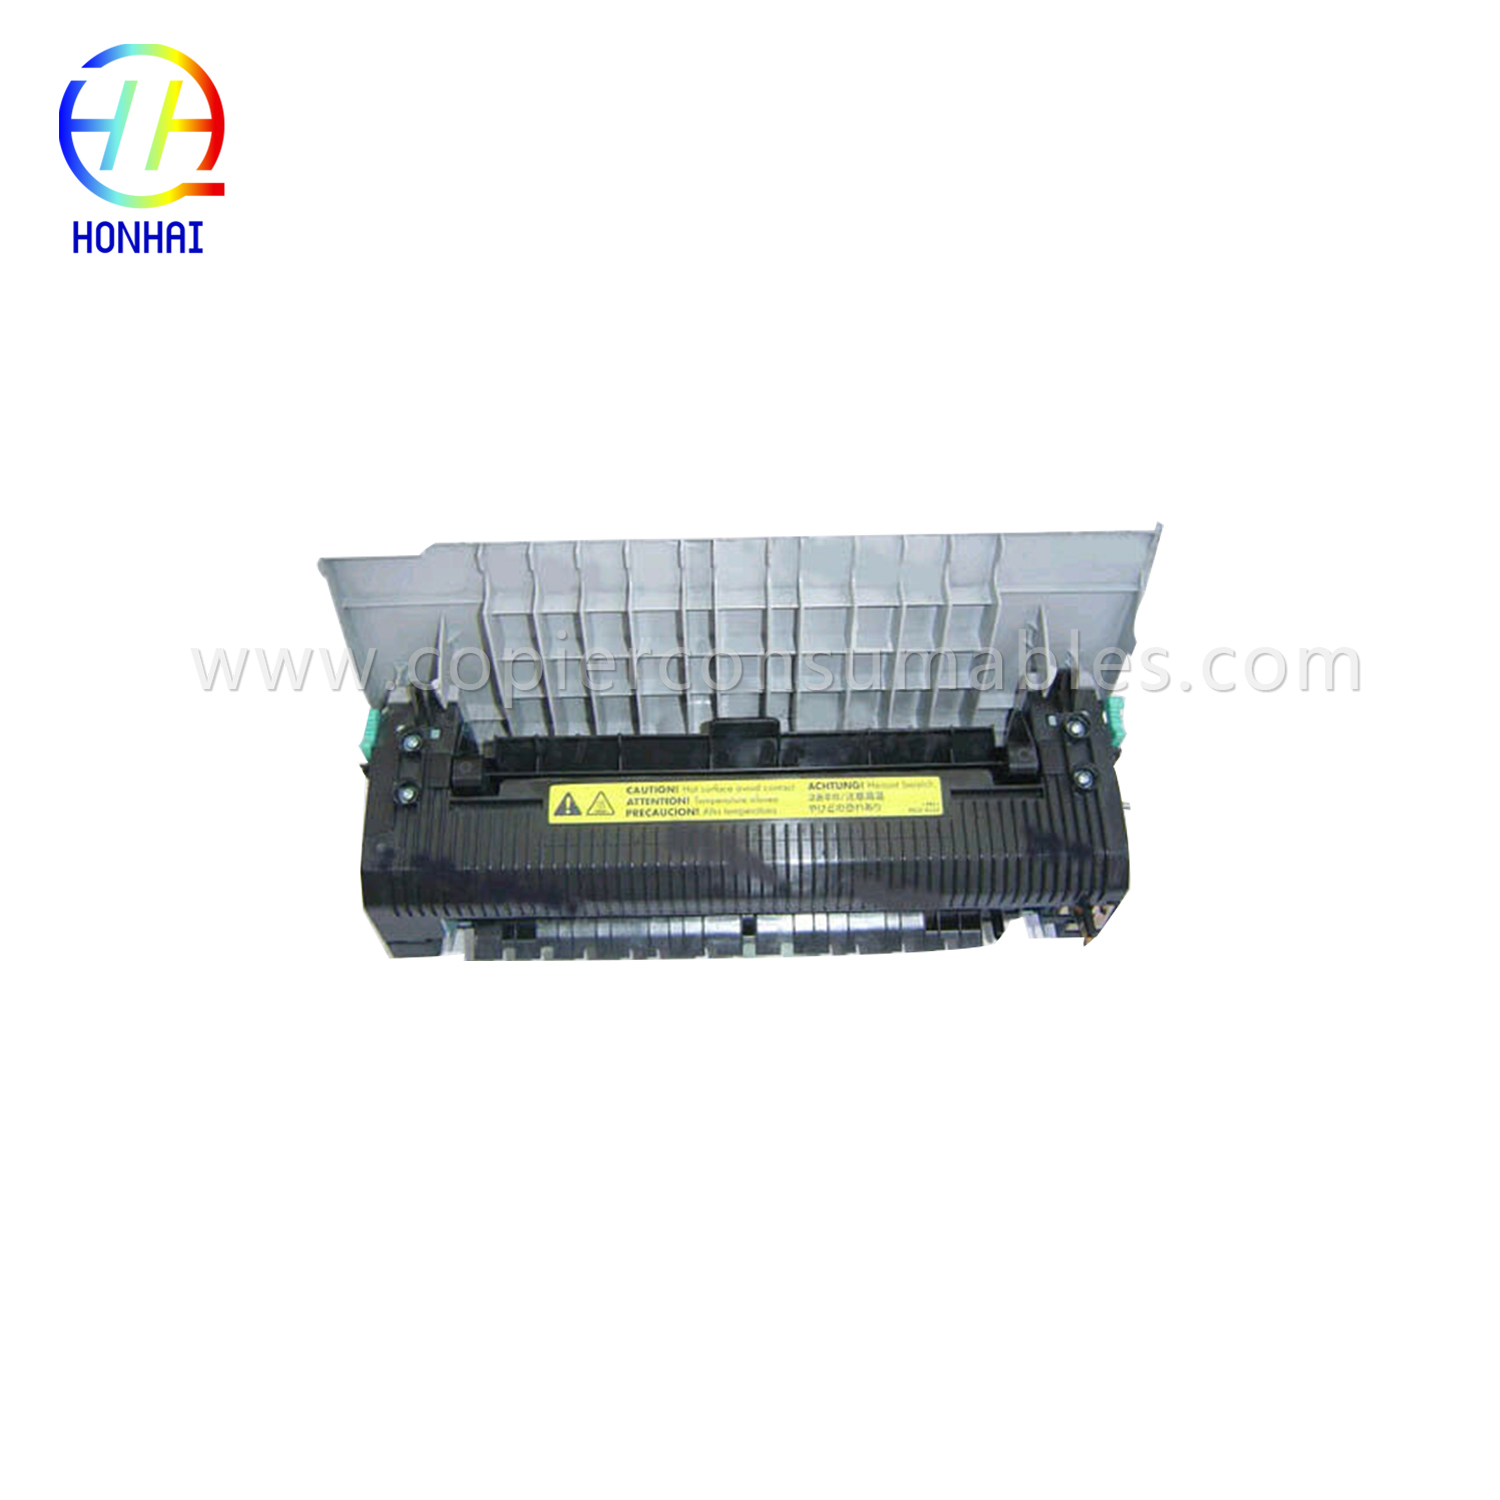 Fuser Unit for HP Color LaserJet 2550 2550L 2550ln 2550n (RG5-7572-110Cn)